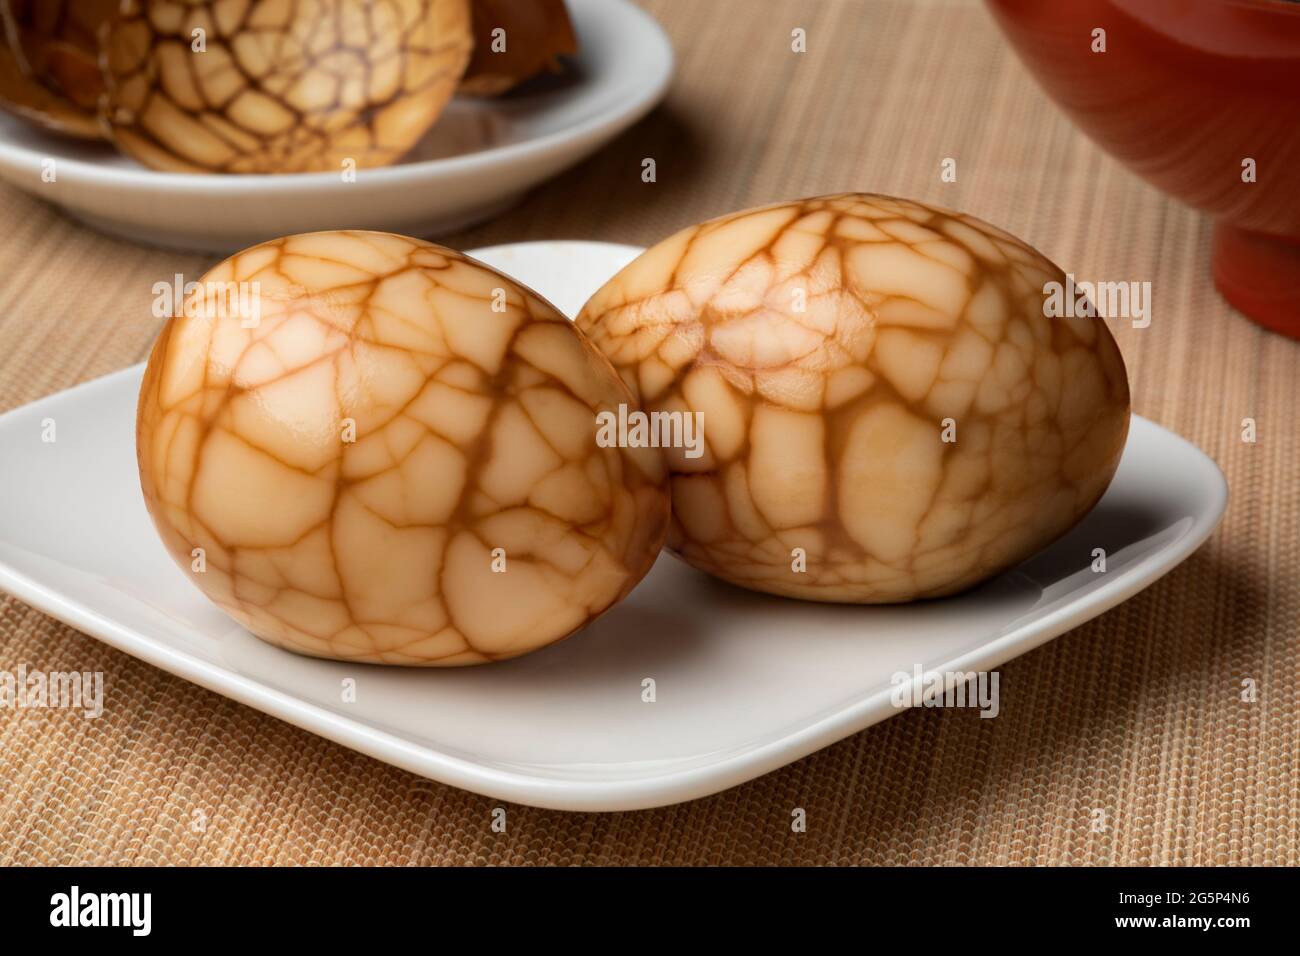 Ein Paar traditionelle chinesische Kräutertee-Eier auf einem Teller als Snack-Lebensmittel aus der Nähe und Eierschale im Hintergrund Stockfoto